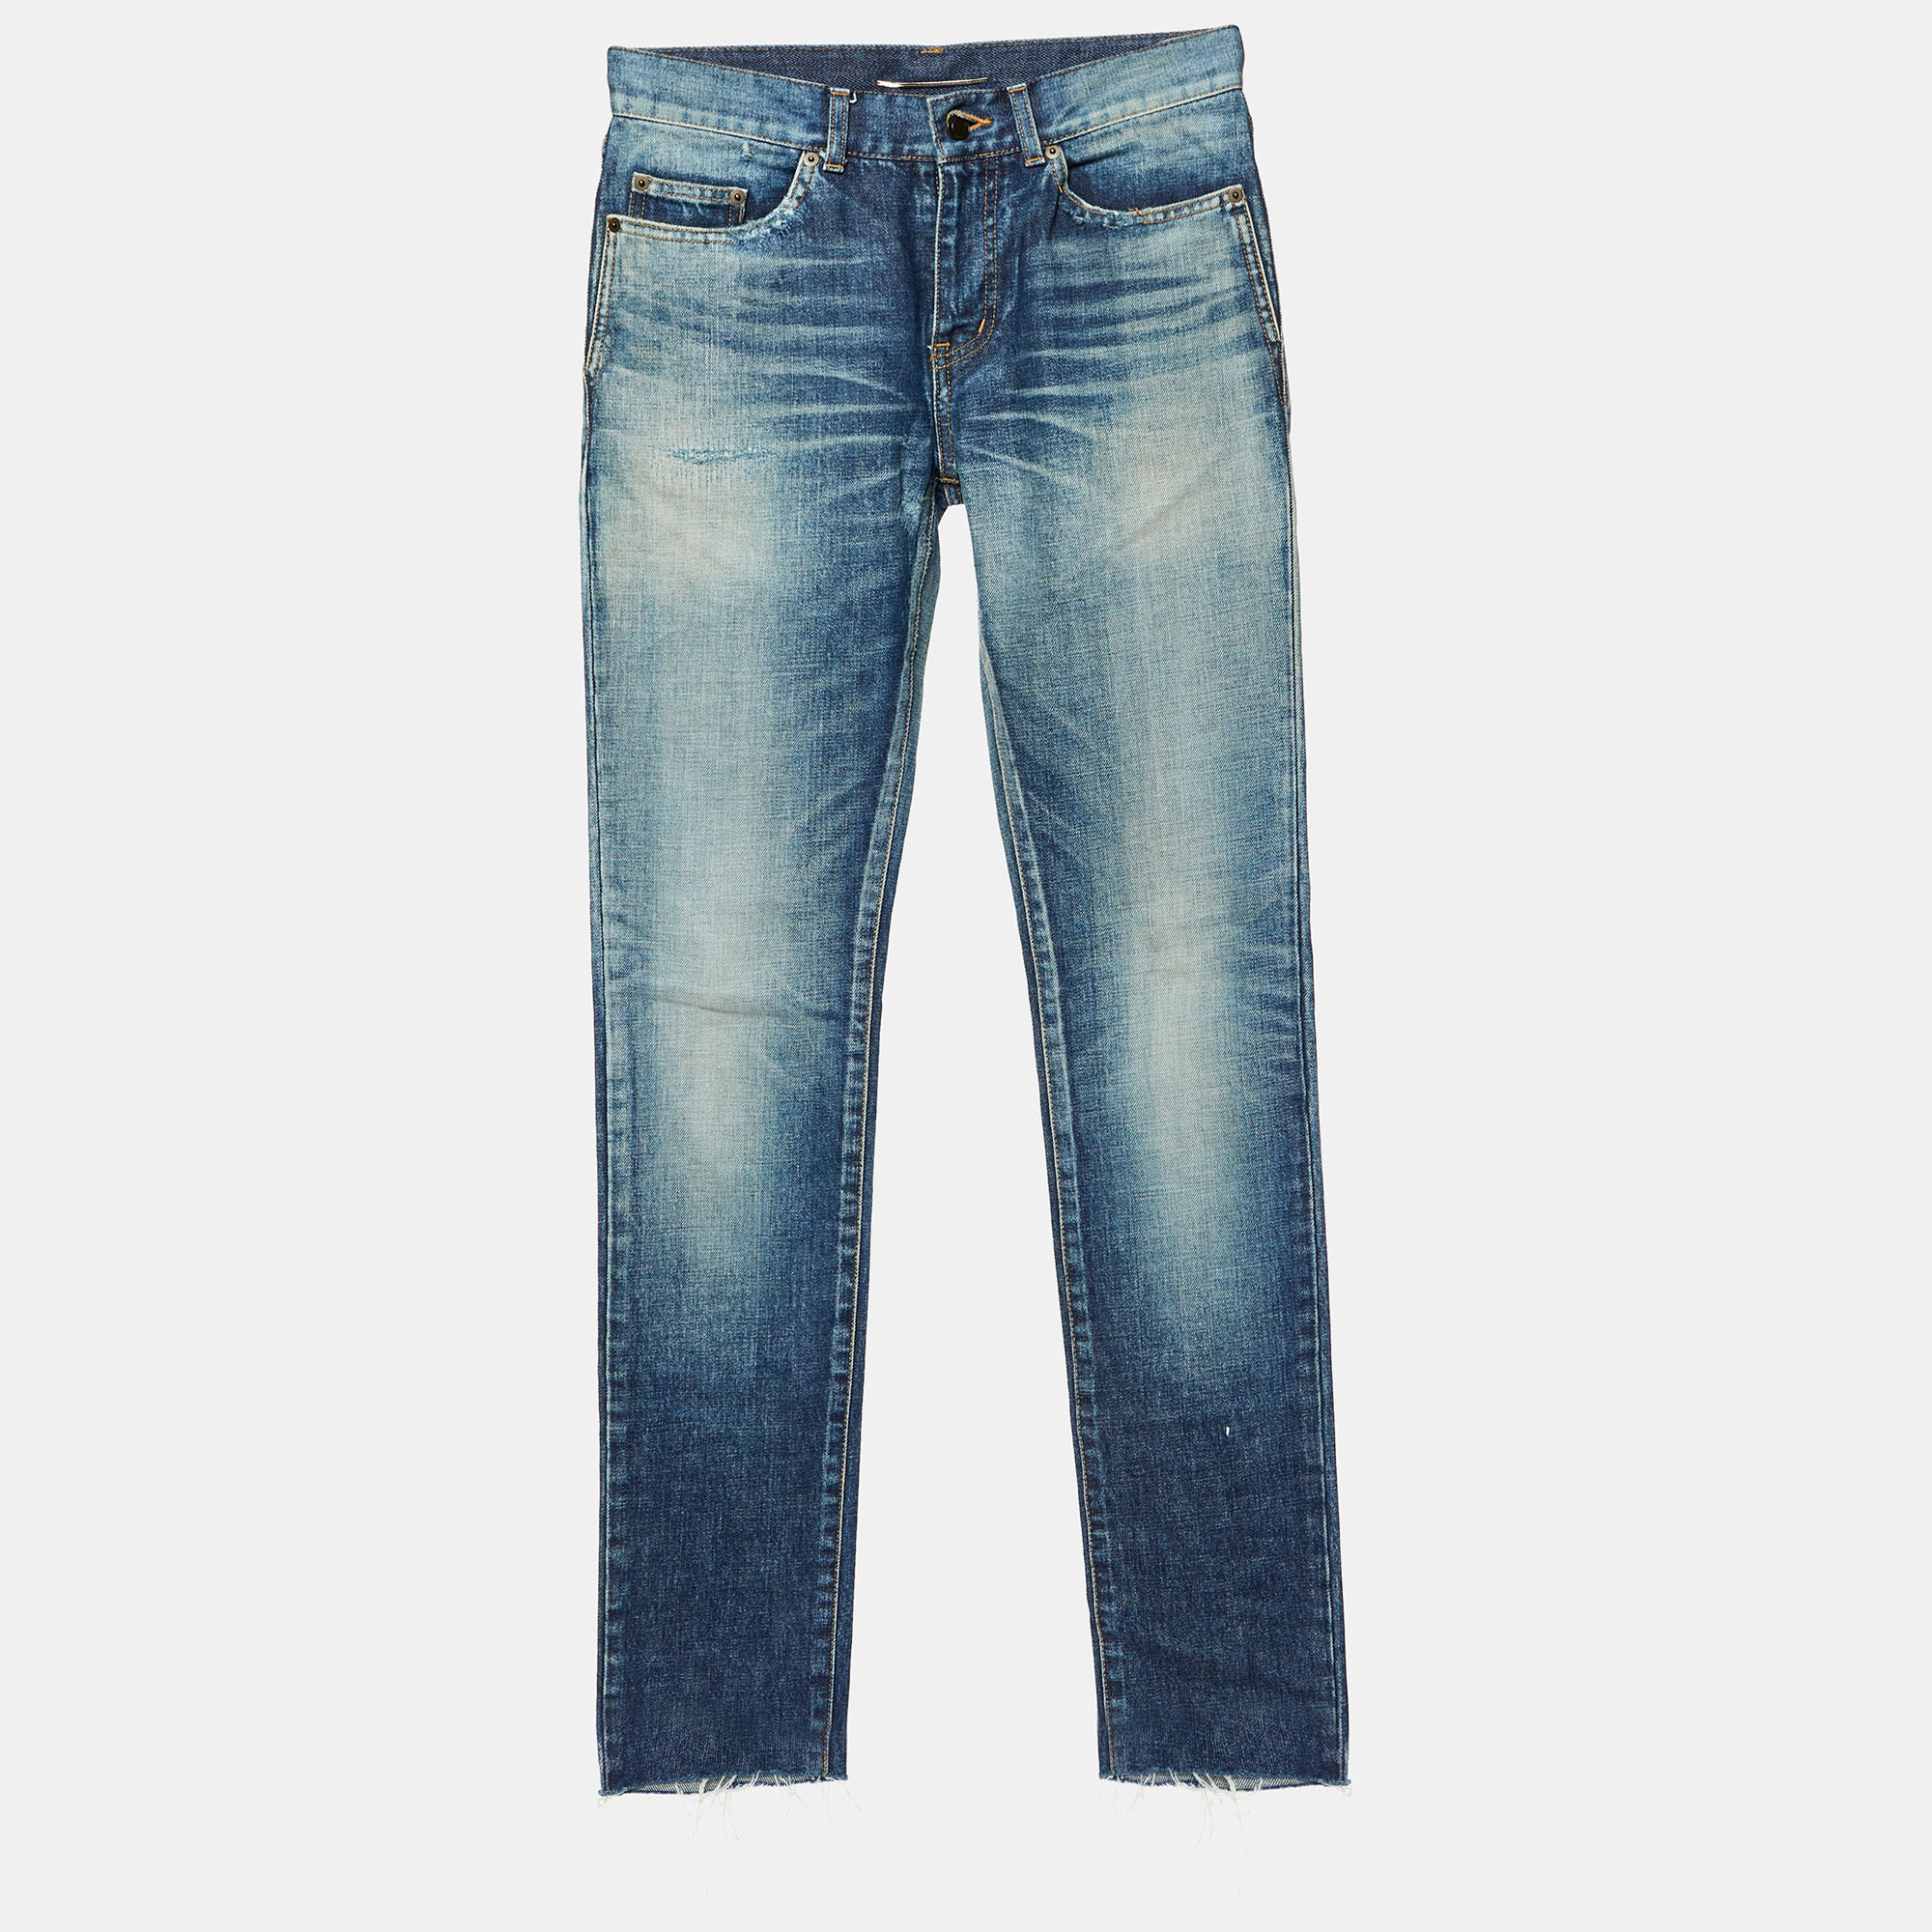 

Saint Laurent Paris Blue Washed & Distressed Denim Jeans S Waist 32"